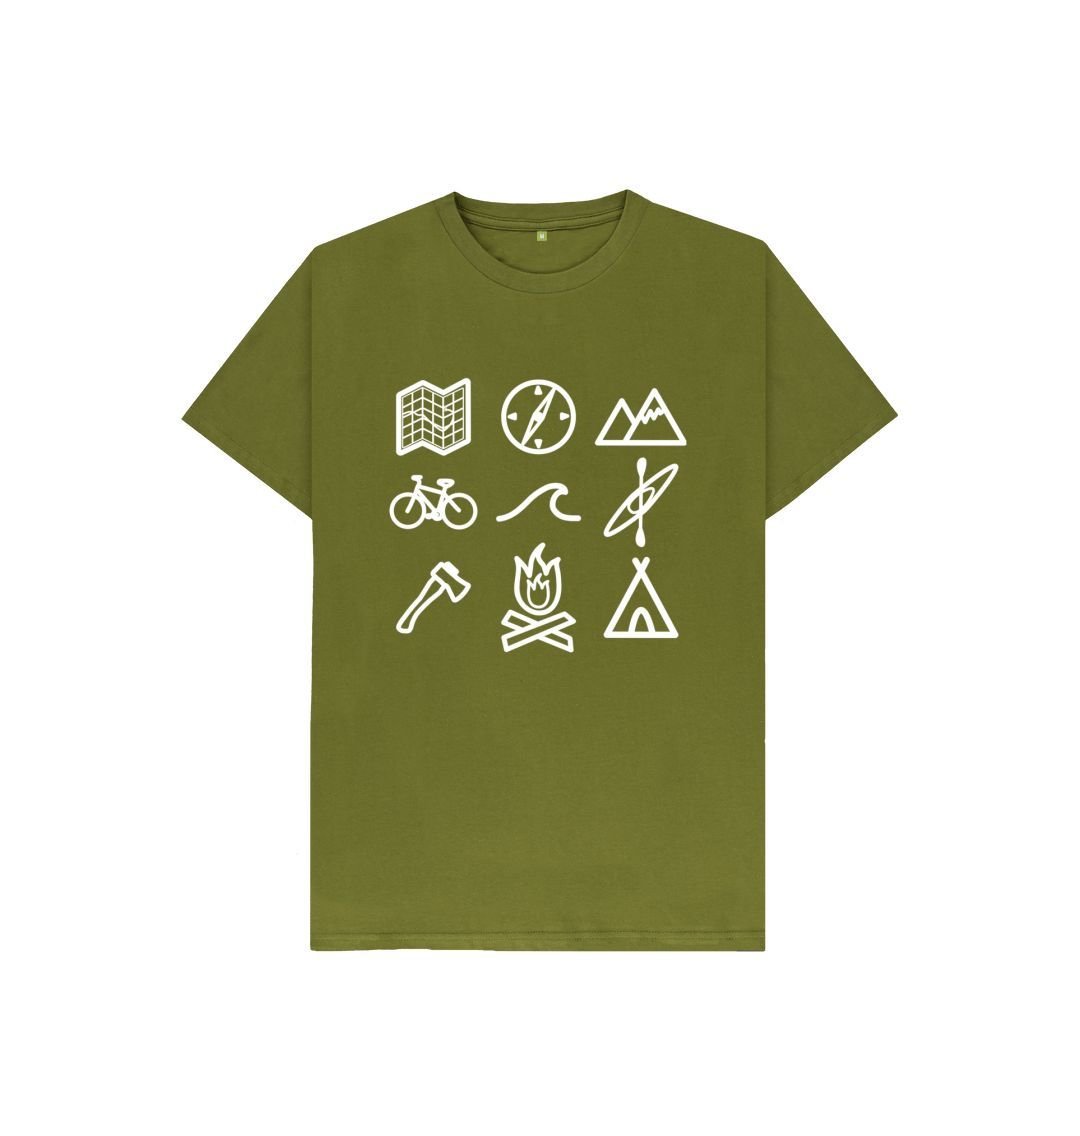 Moss Green P1AN Outdoor Activity Childrens T-shirt